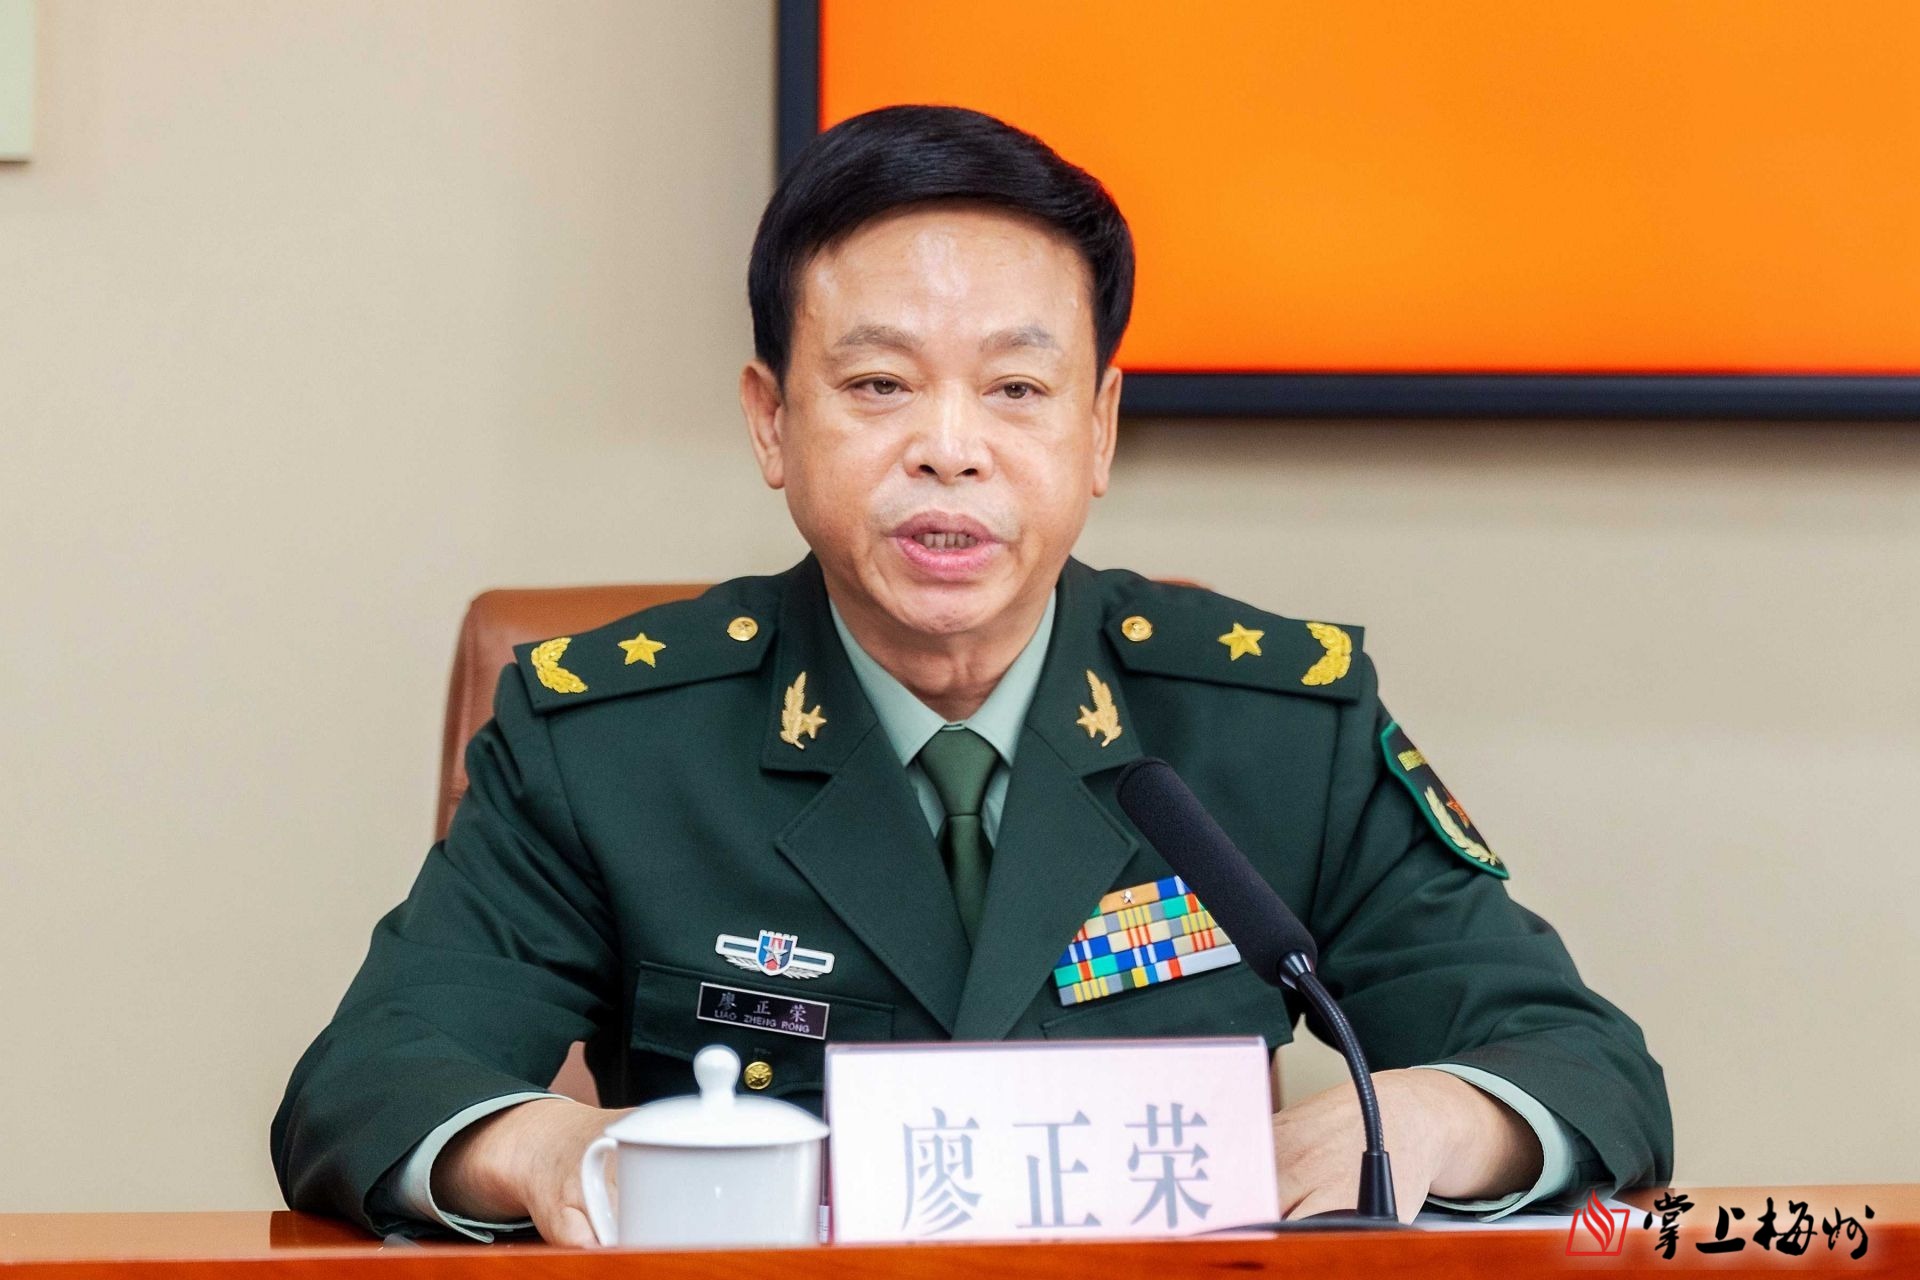 省军区少将副司令员廖正荣宣布任职决定并向马正勇颁发任职证书